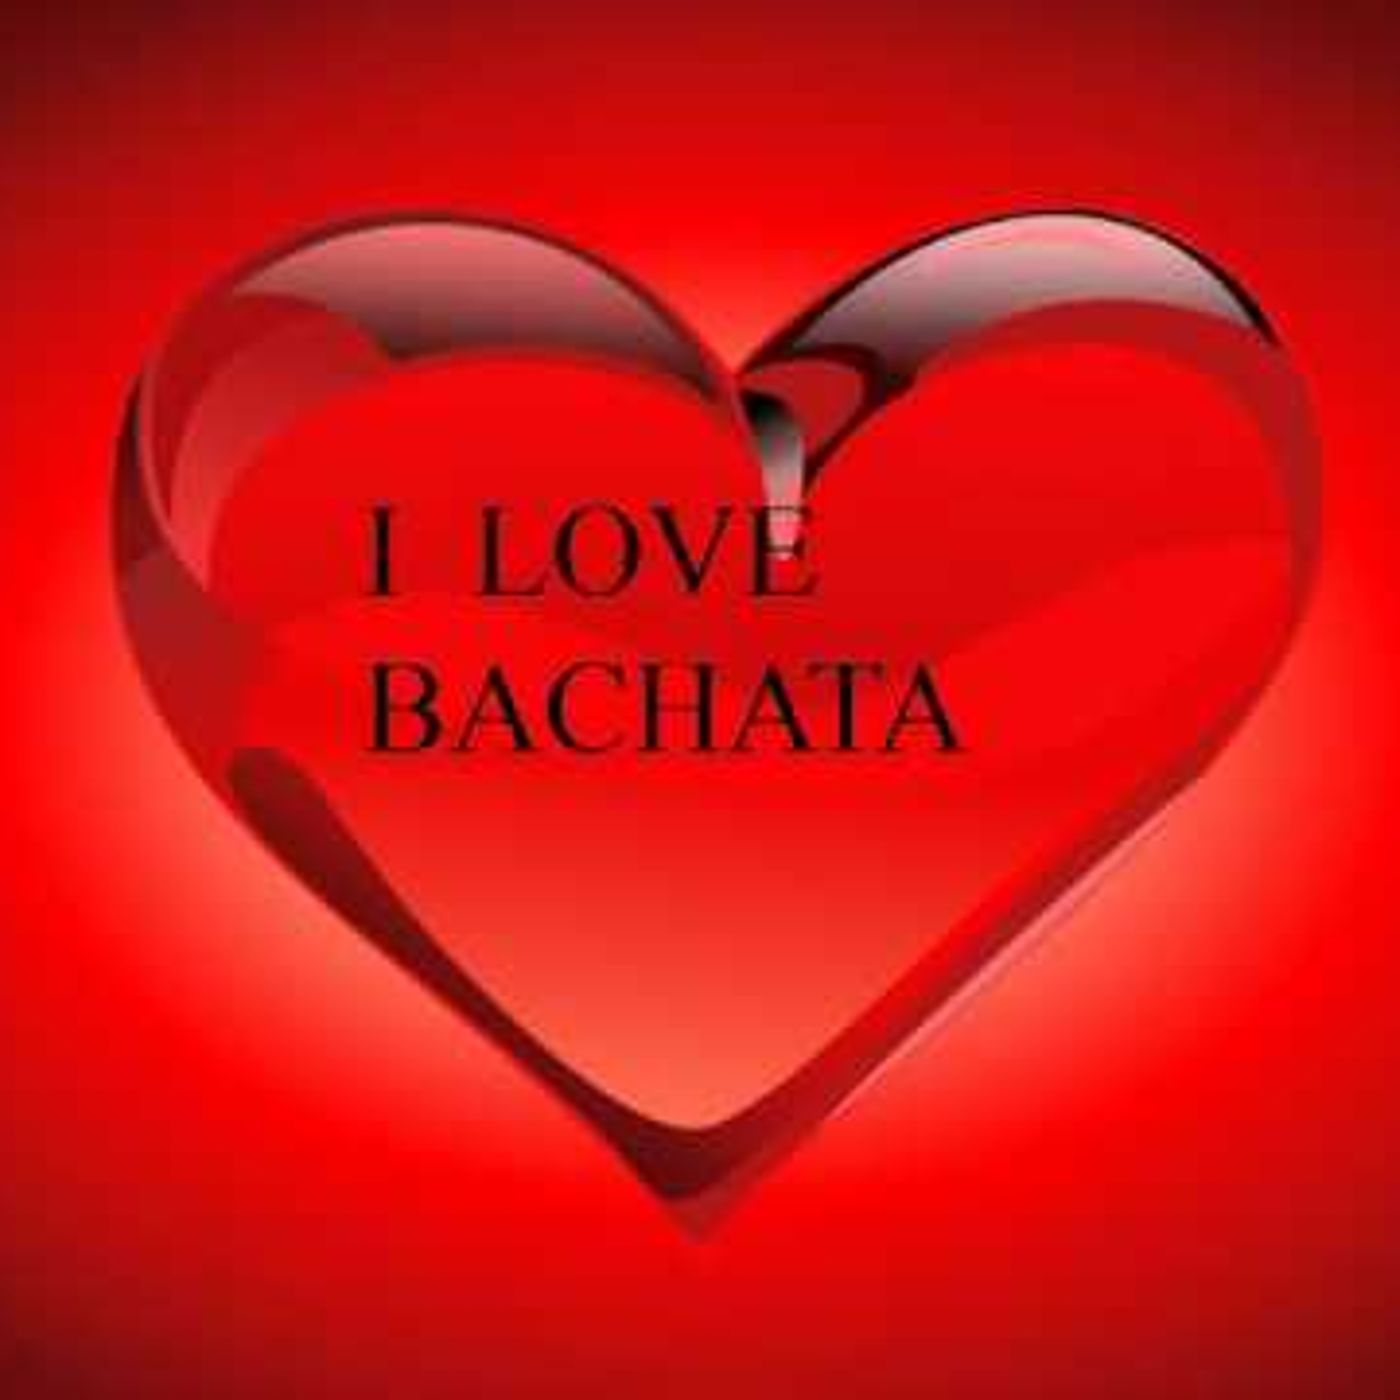 I Love bachata